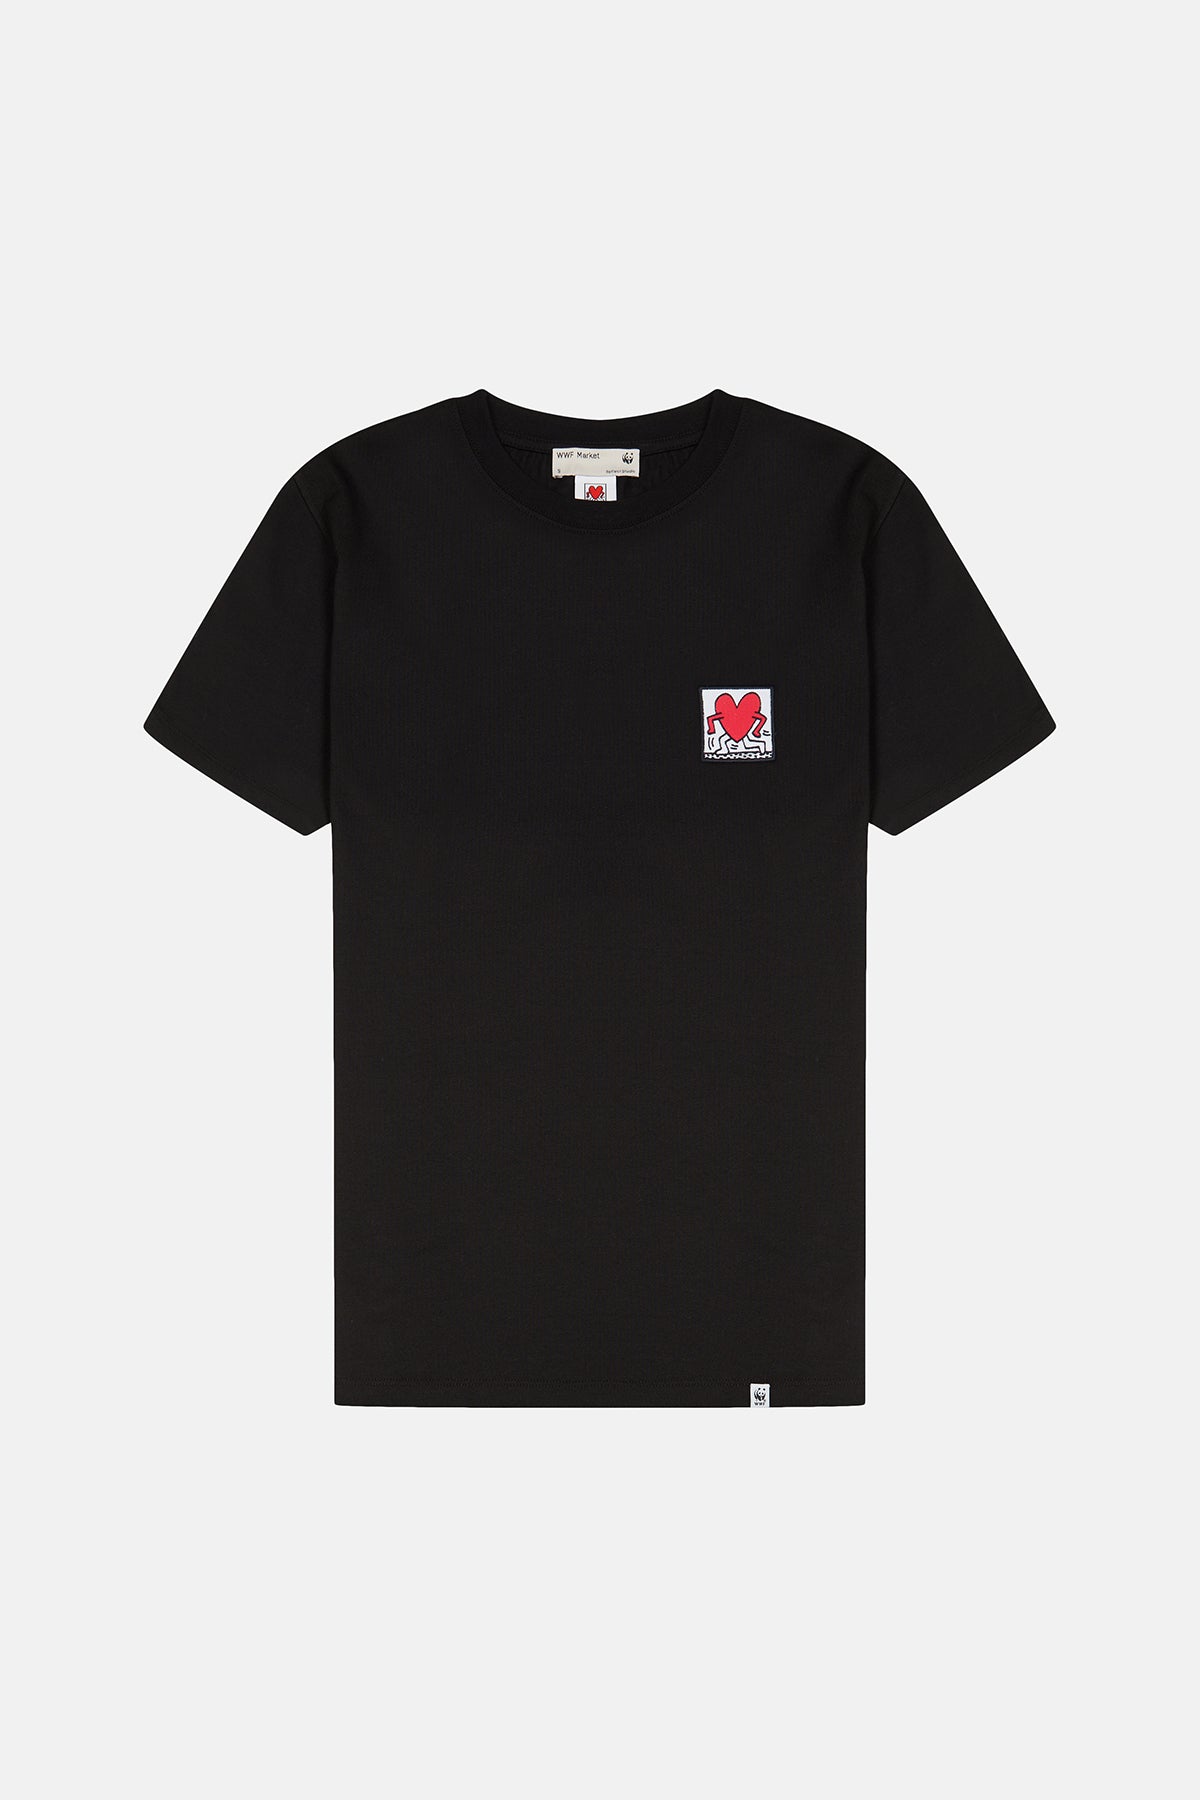 Hug Soft Supreme T-shirt - Siyah